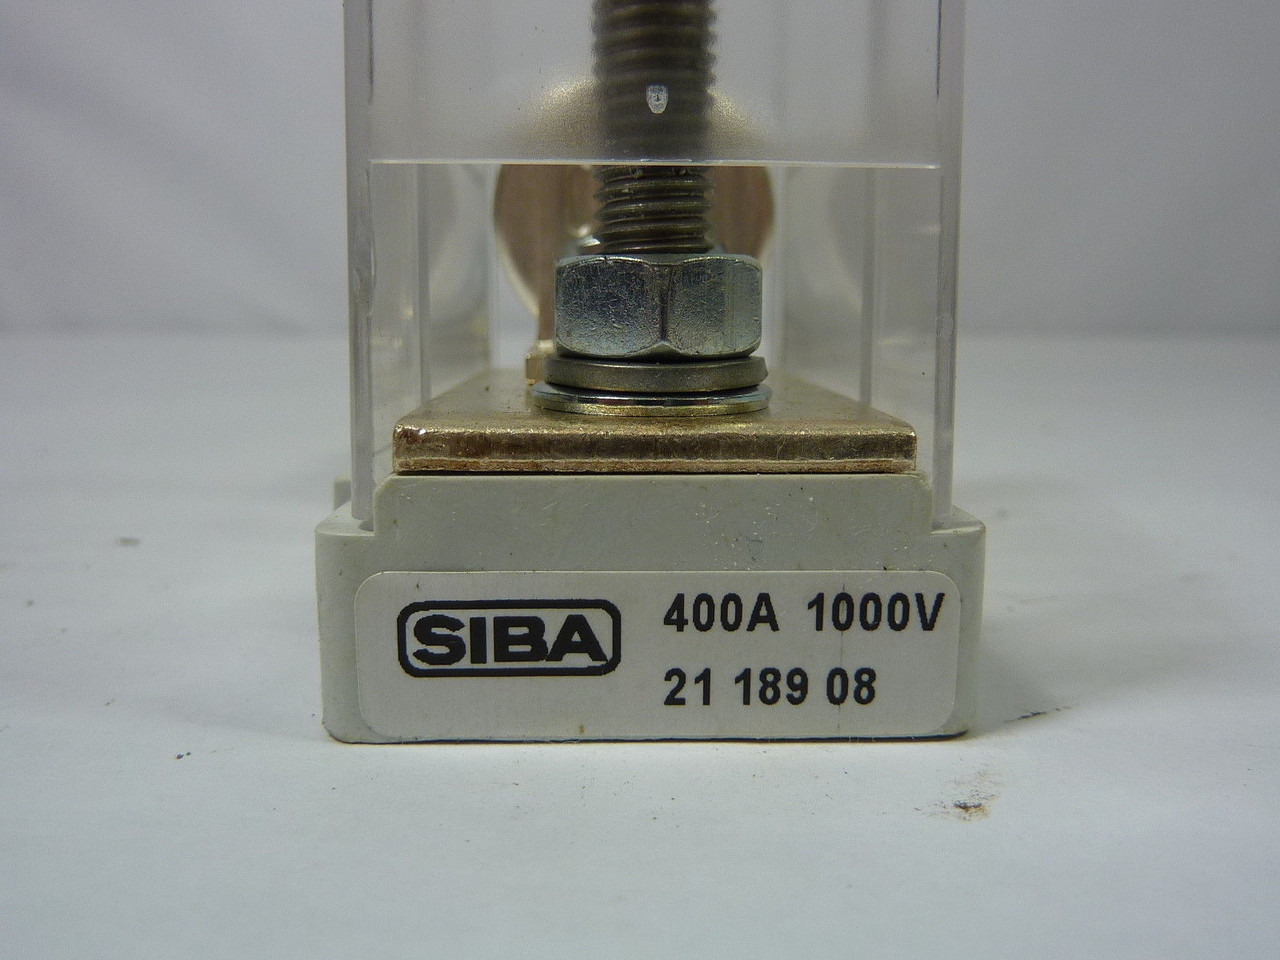 Siba 5019206 Ceramic Fuse 600V w/Mount &Cover 21 189 08 ! NOP !